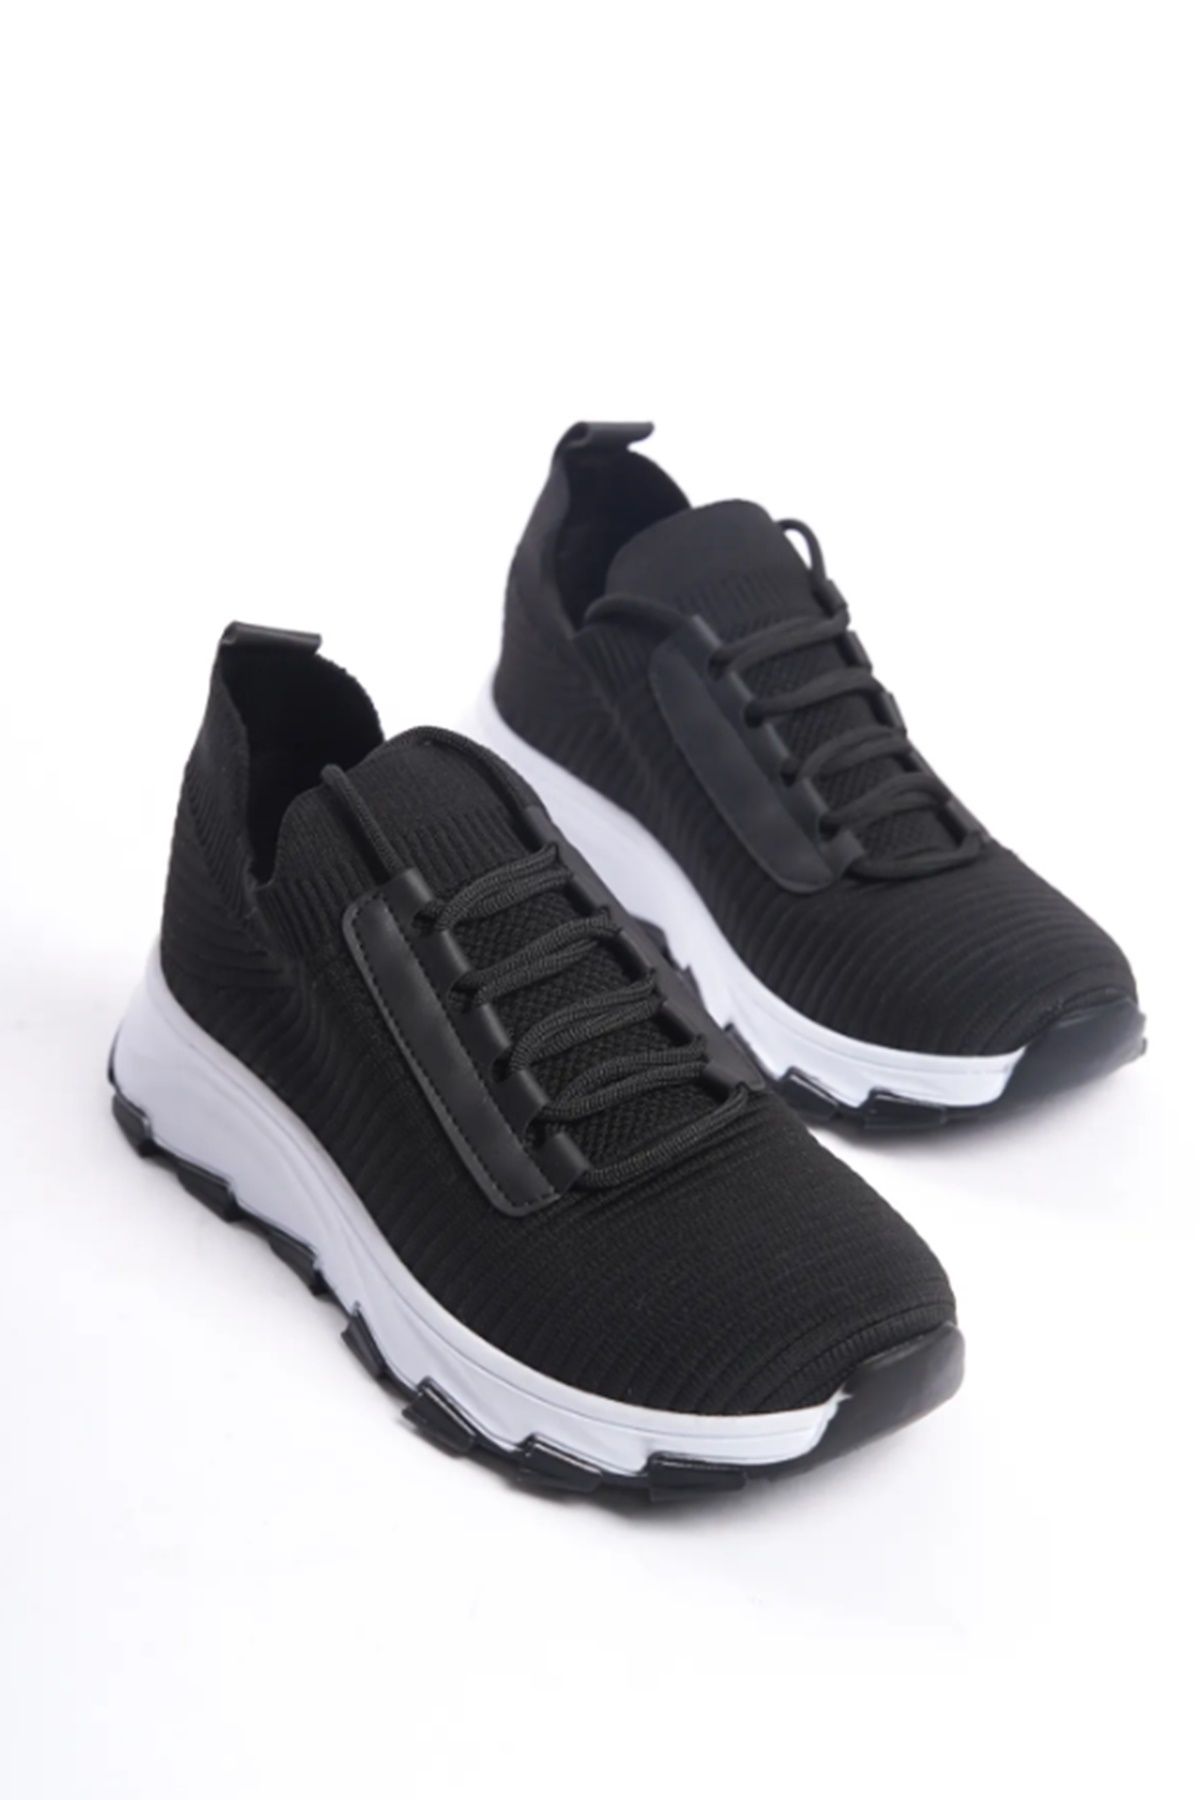 Grafen Kids Triko Garantili Bağcıklı Günlük Kadın Sneaker Yürüyüş Ayakkabısı